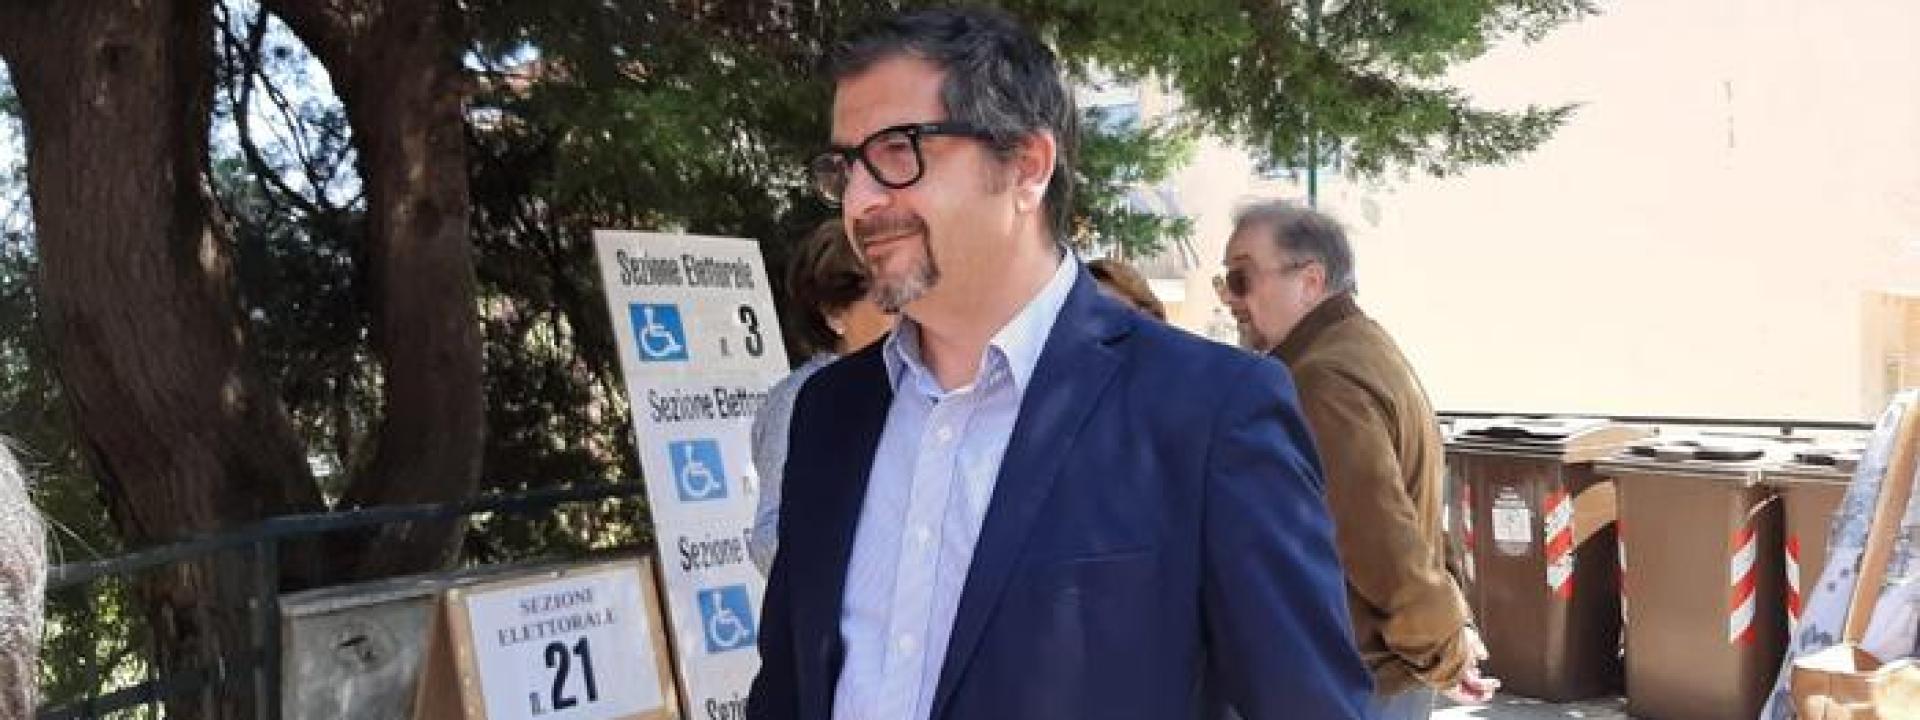 Marche - Silvetti è il nuovo sindaco: dopo più di 30 anni il centrodestra espugna Ancona